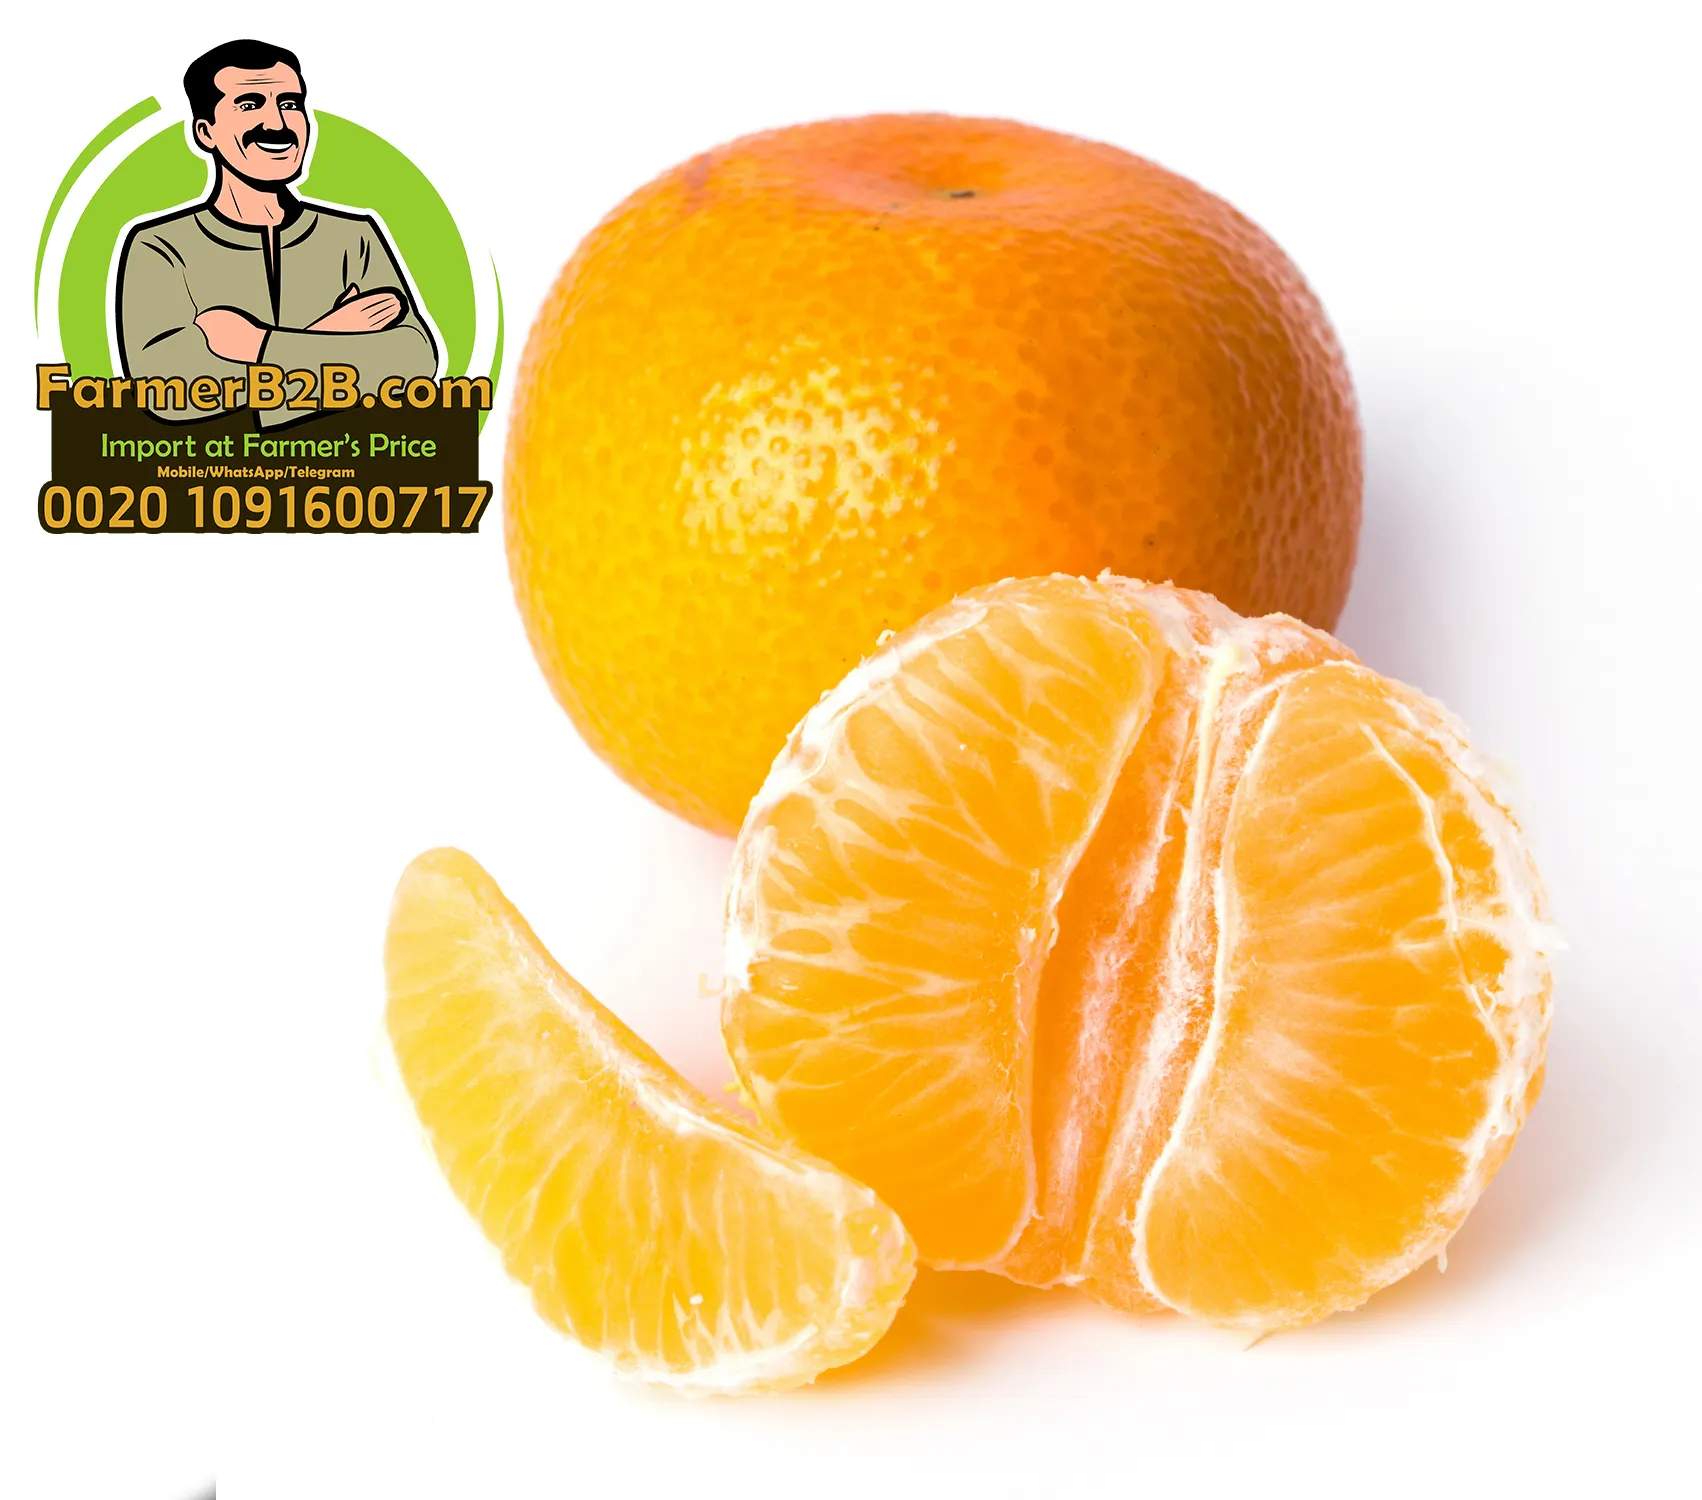 למעלה איכות מצרי תפוזי מנדרינית (מחיר מיוחד) עבור כל מכירה